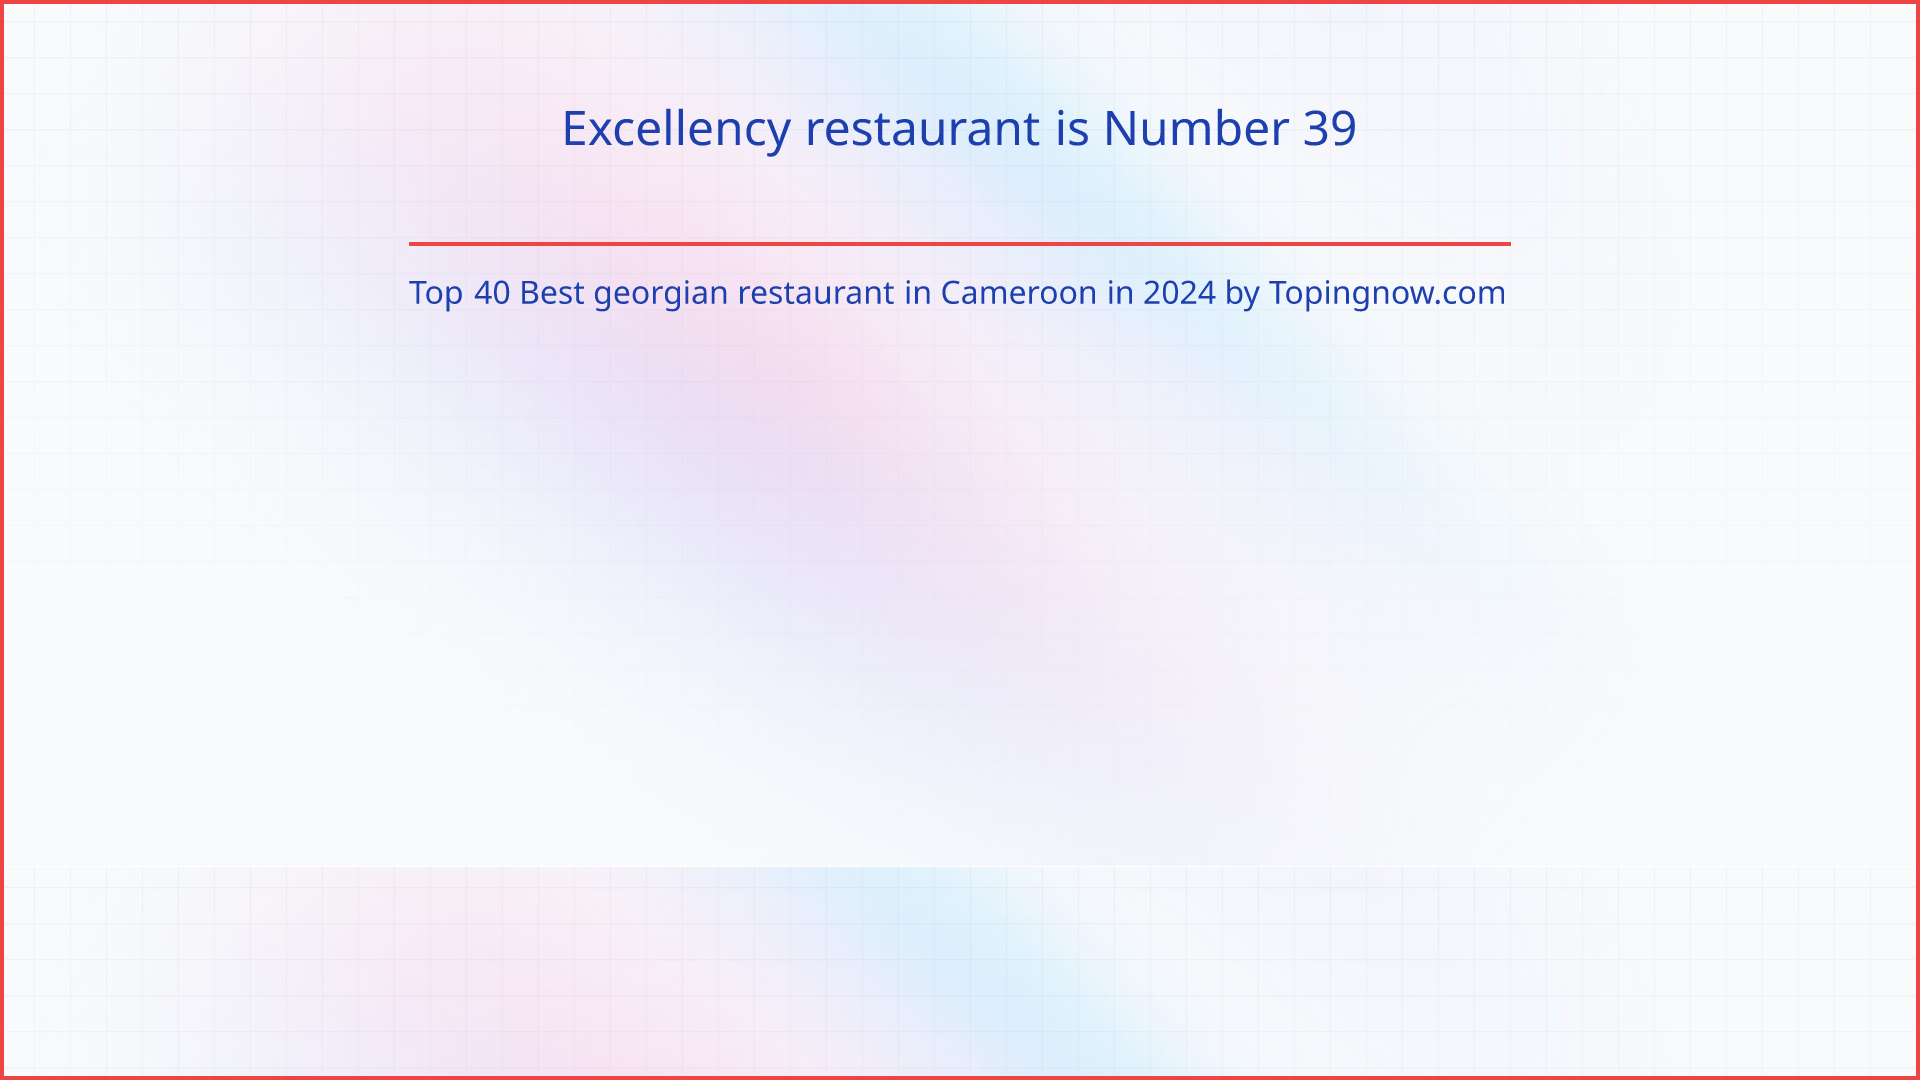 Excellency restaurant: Top 40 Best georgian restaurant in Cameroon in 2024